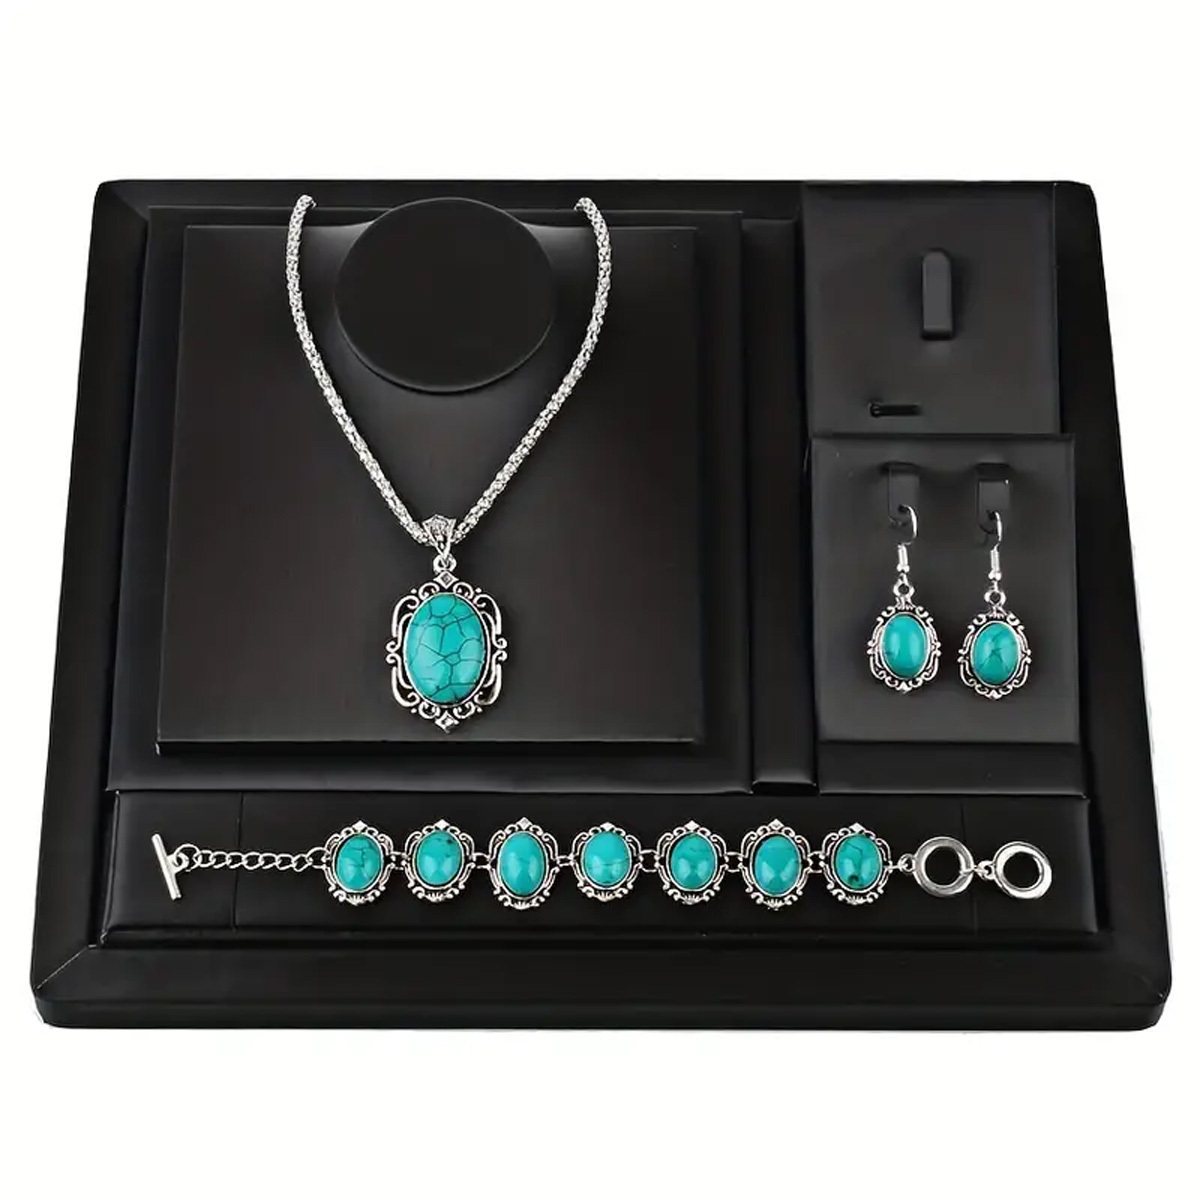  Western Jewelry for Women,4 Pcs Bohemian Turquoise Jewelry Set,  Turquoise Necklace,Western Belts, Vintage Turquoise Earrings & Bracelet,  Boho Turquoise Jewelry for Women: Clothing, Shoes & Jewelry